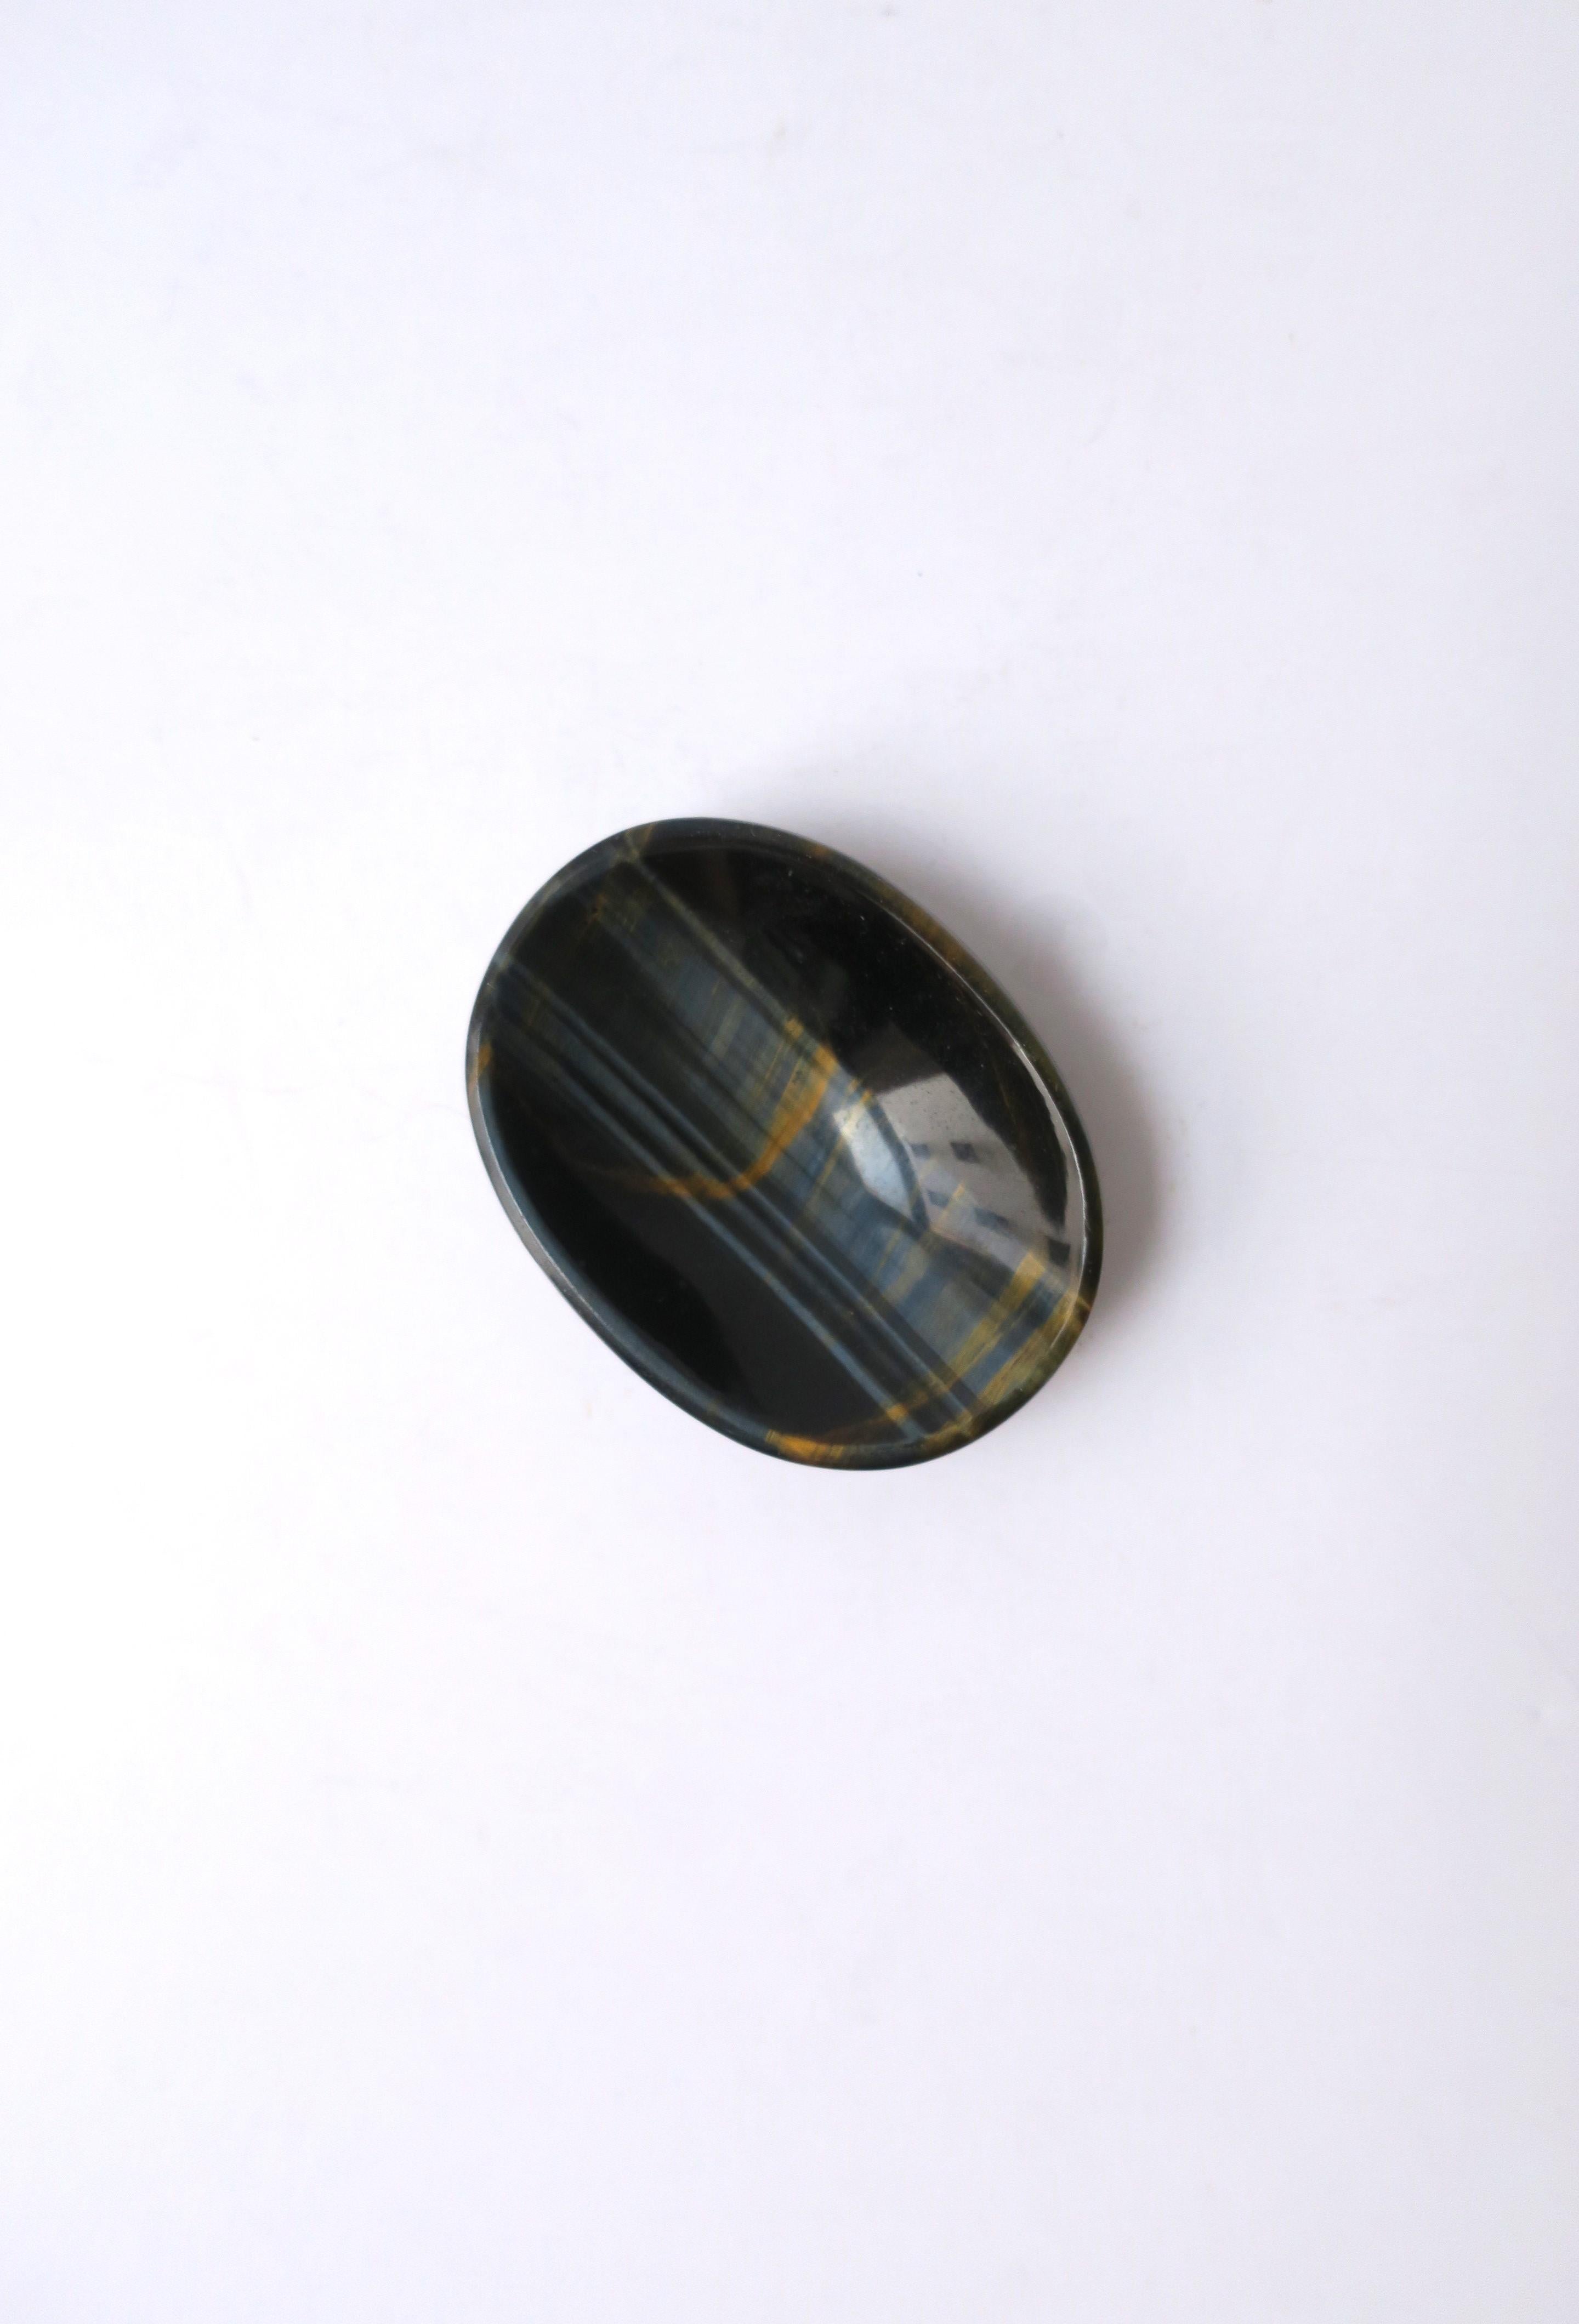 Eine kleine, ovale Schale aus poliertem Achat in einem satten Dunkelblau und Gold-/Kupfertönen, im Stil der Moderne/Minimalismus. Abgebildet mit Ohrringen. Ein schönes Stück für kleine Gegenstände wie Ohrringe, Manschettenknöpfe, einen Ring,